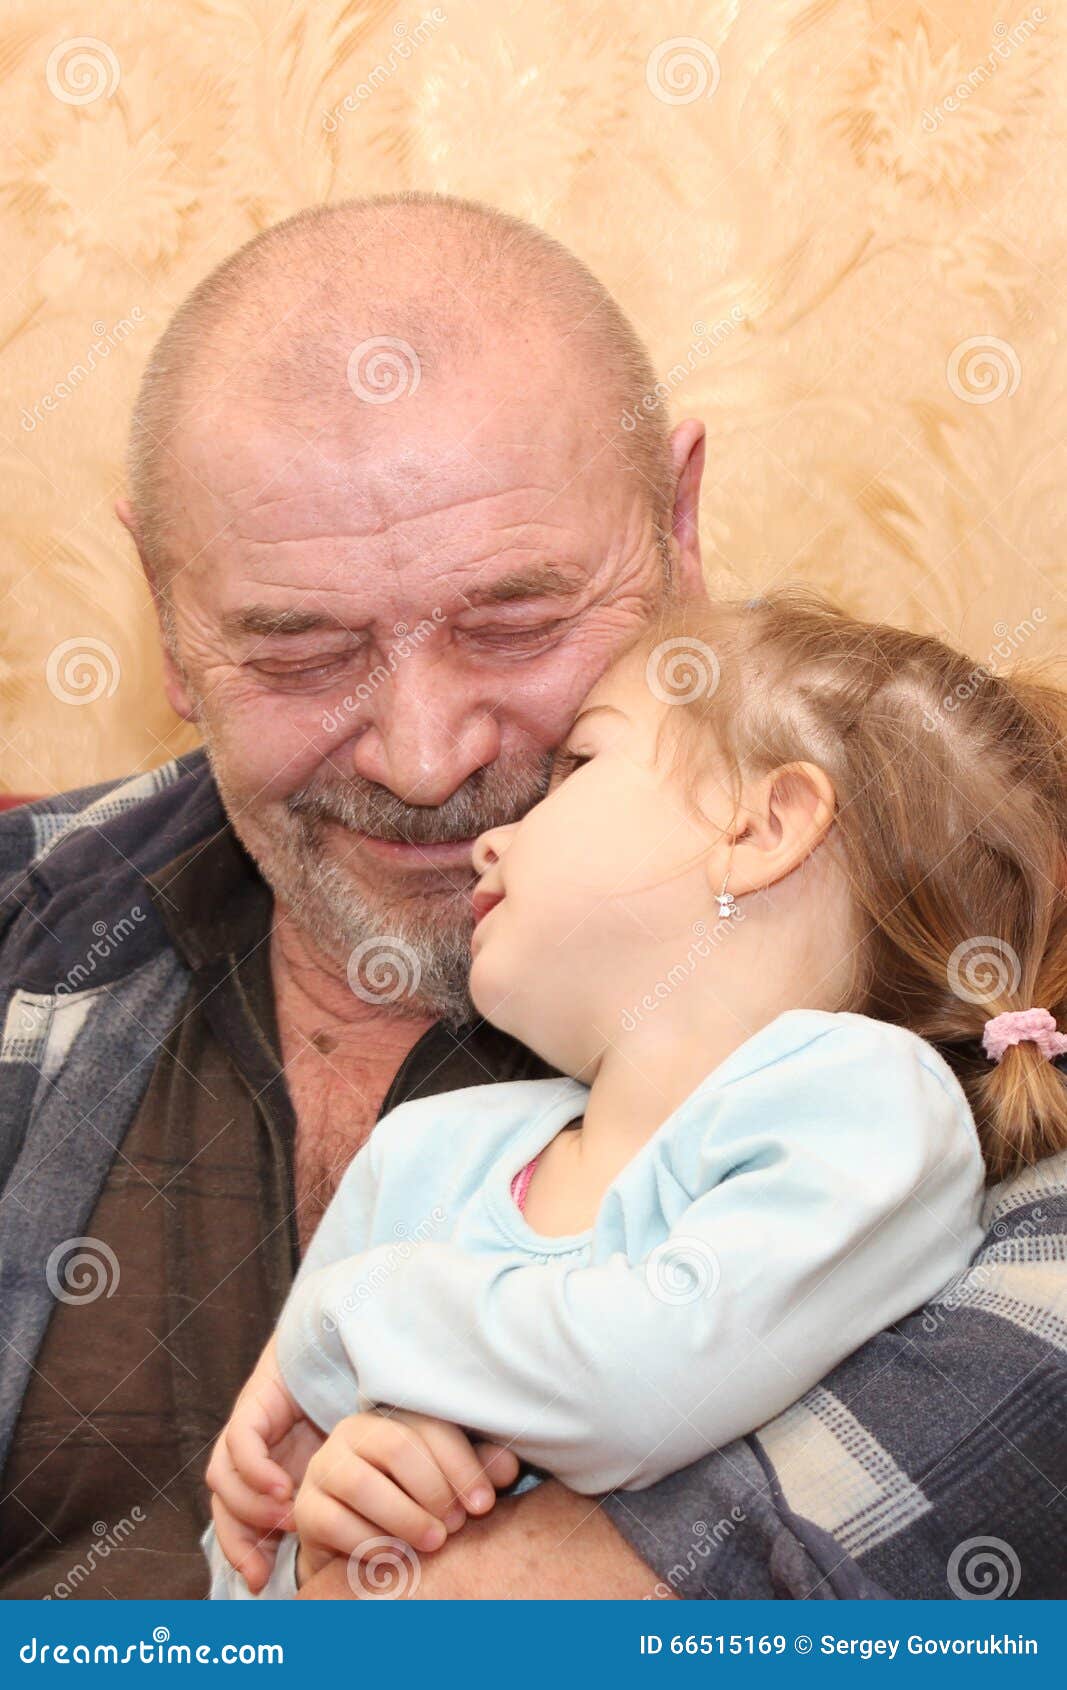 Насиловал внучку видео. Дедушка и внучка. Старик внучку. Девочка с дедушкой обнимаются. Девушка обнимает дедушку.